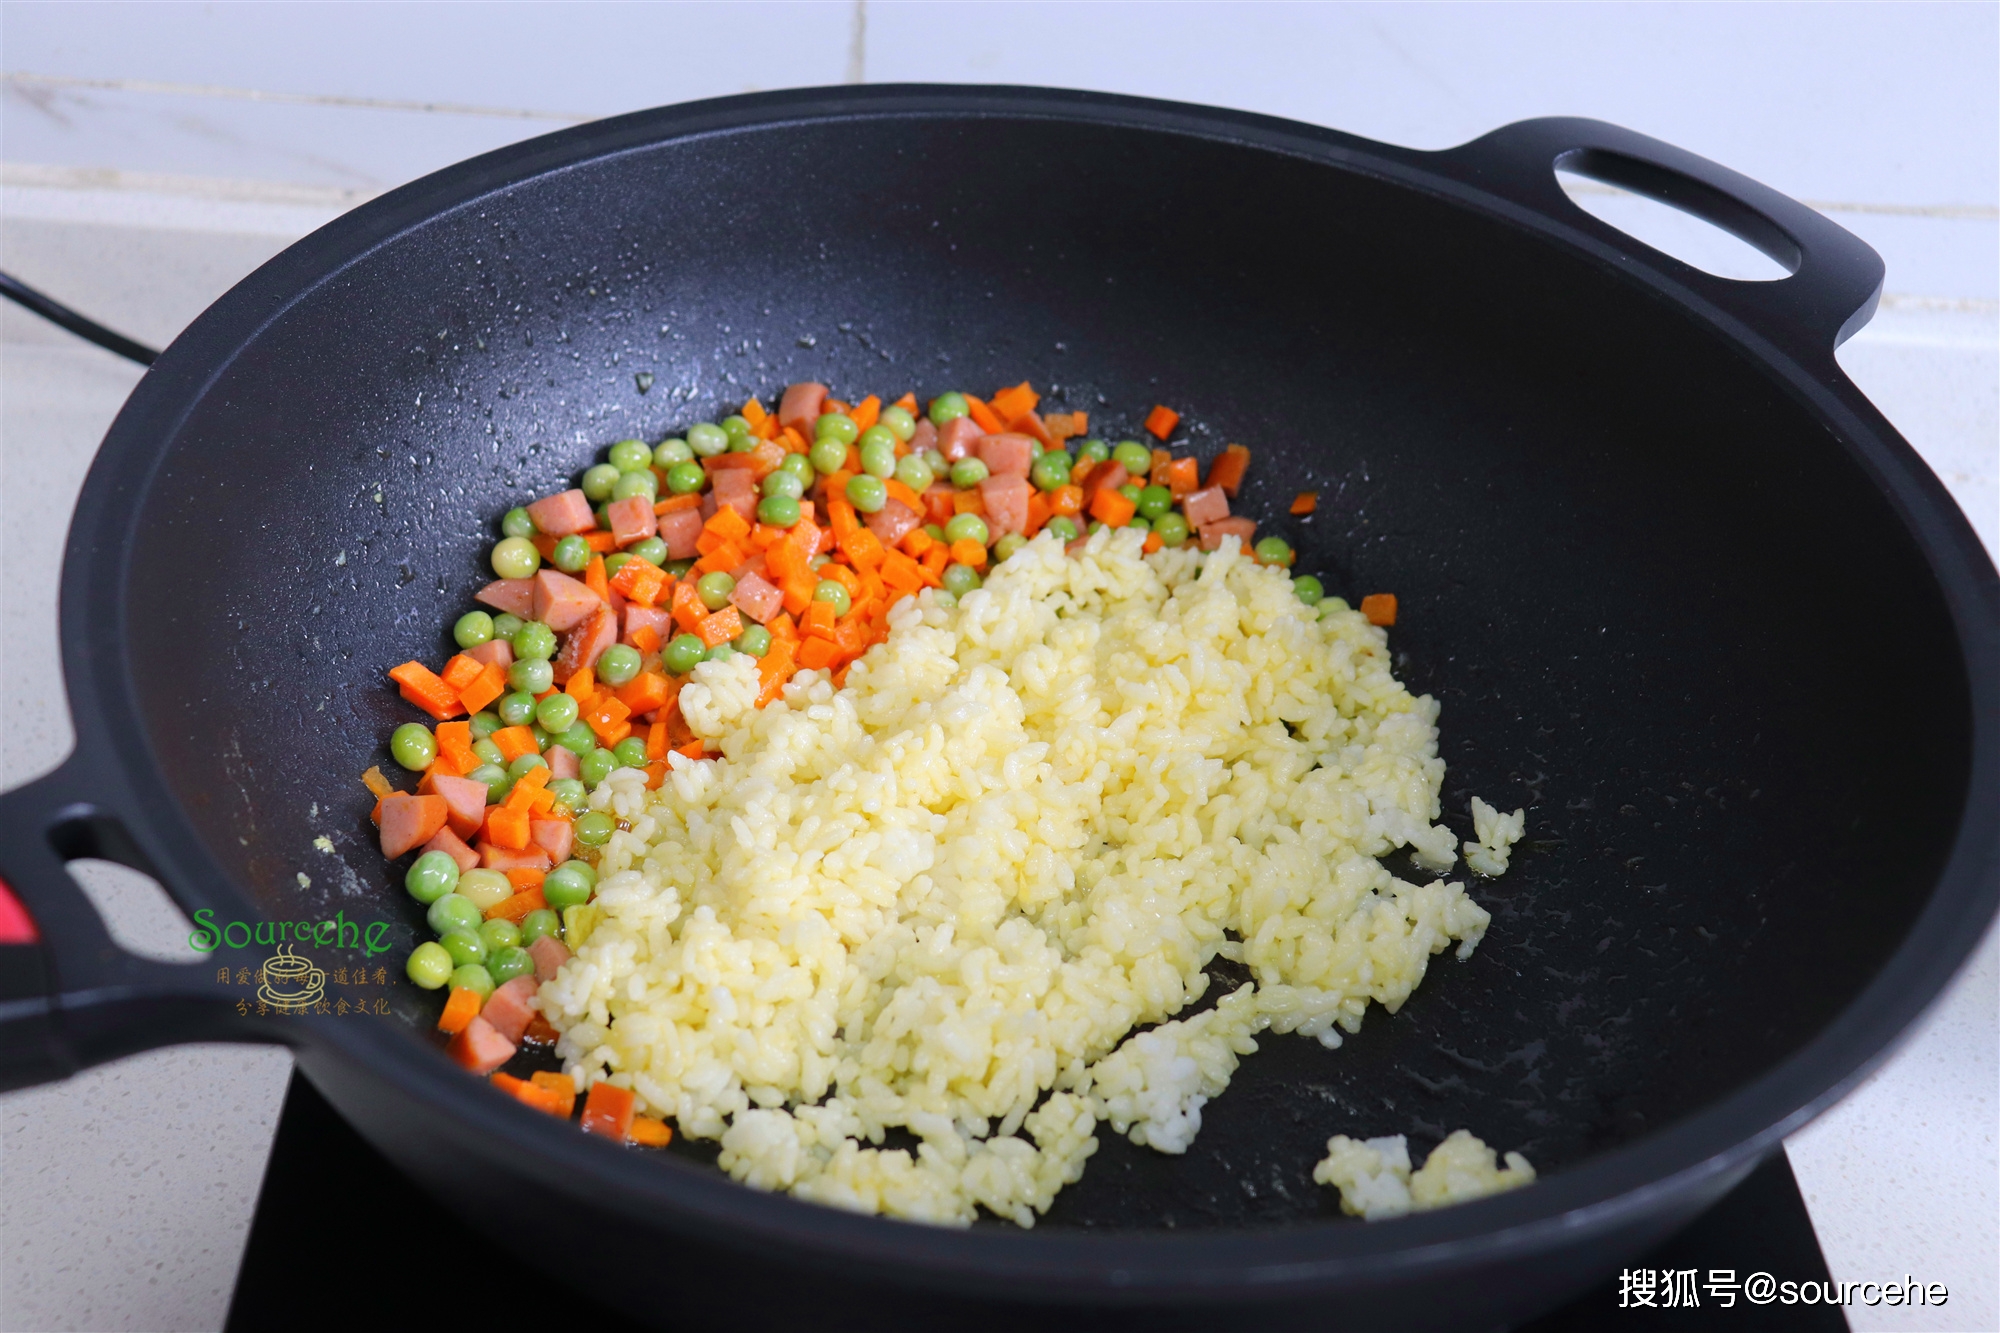 原创
            蛋炒饭时多加一步，米饭可以在锅中跳舞，粒粒分明，很好吃！
                
                 